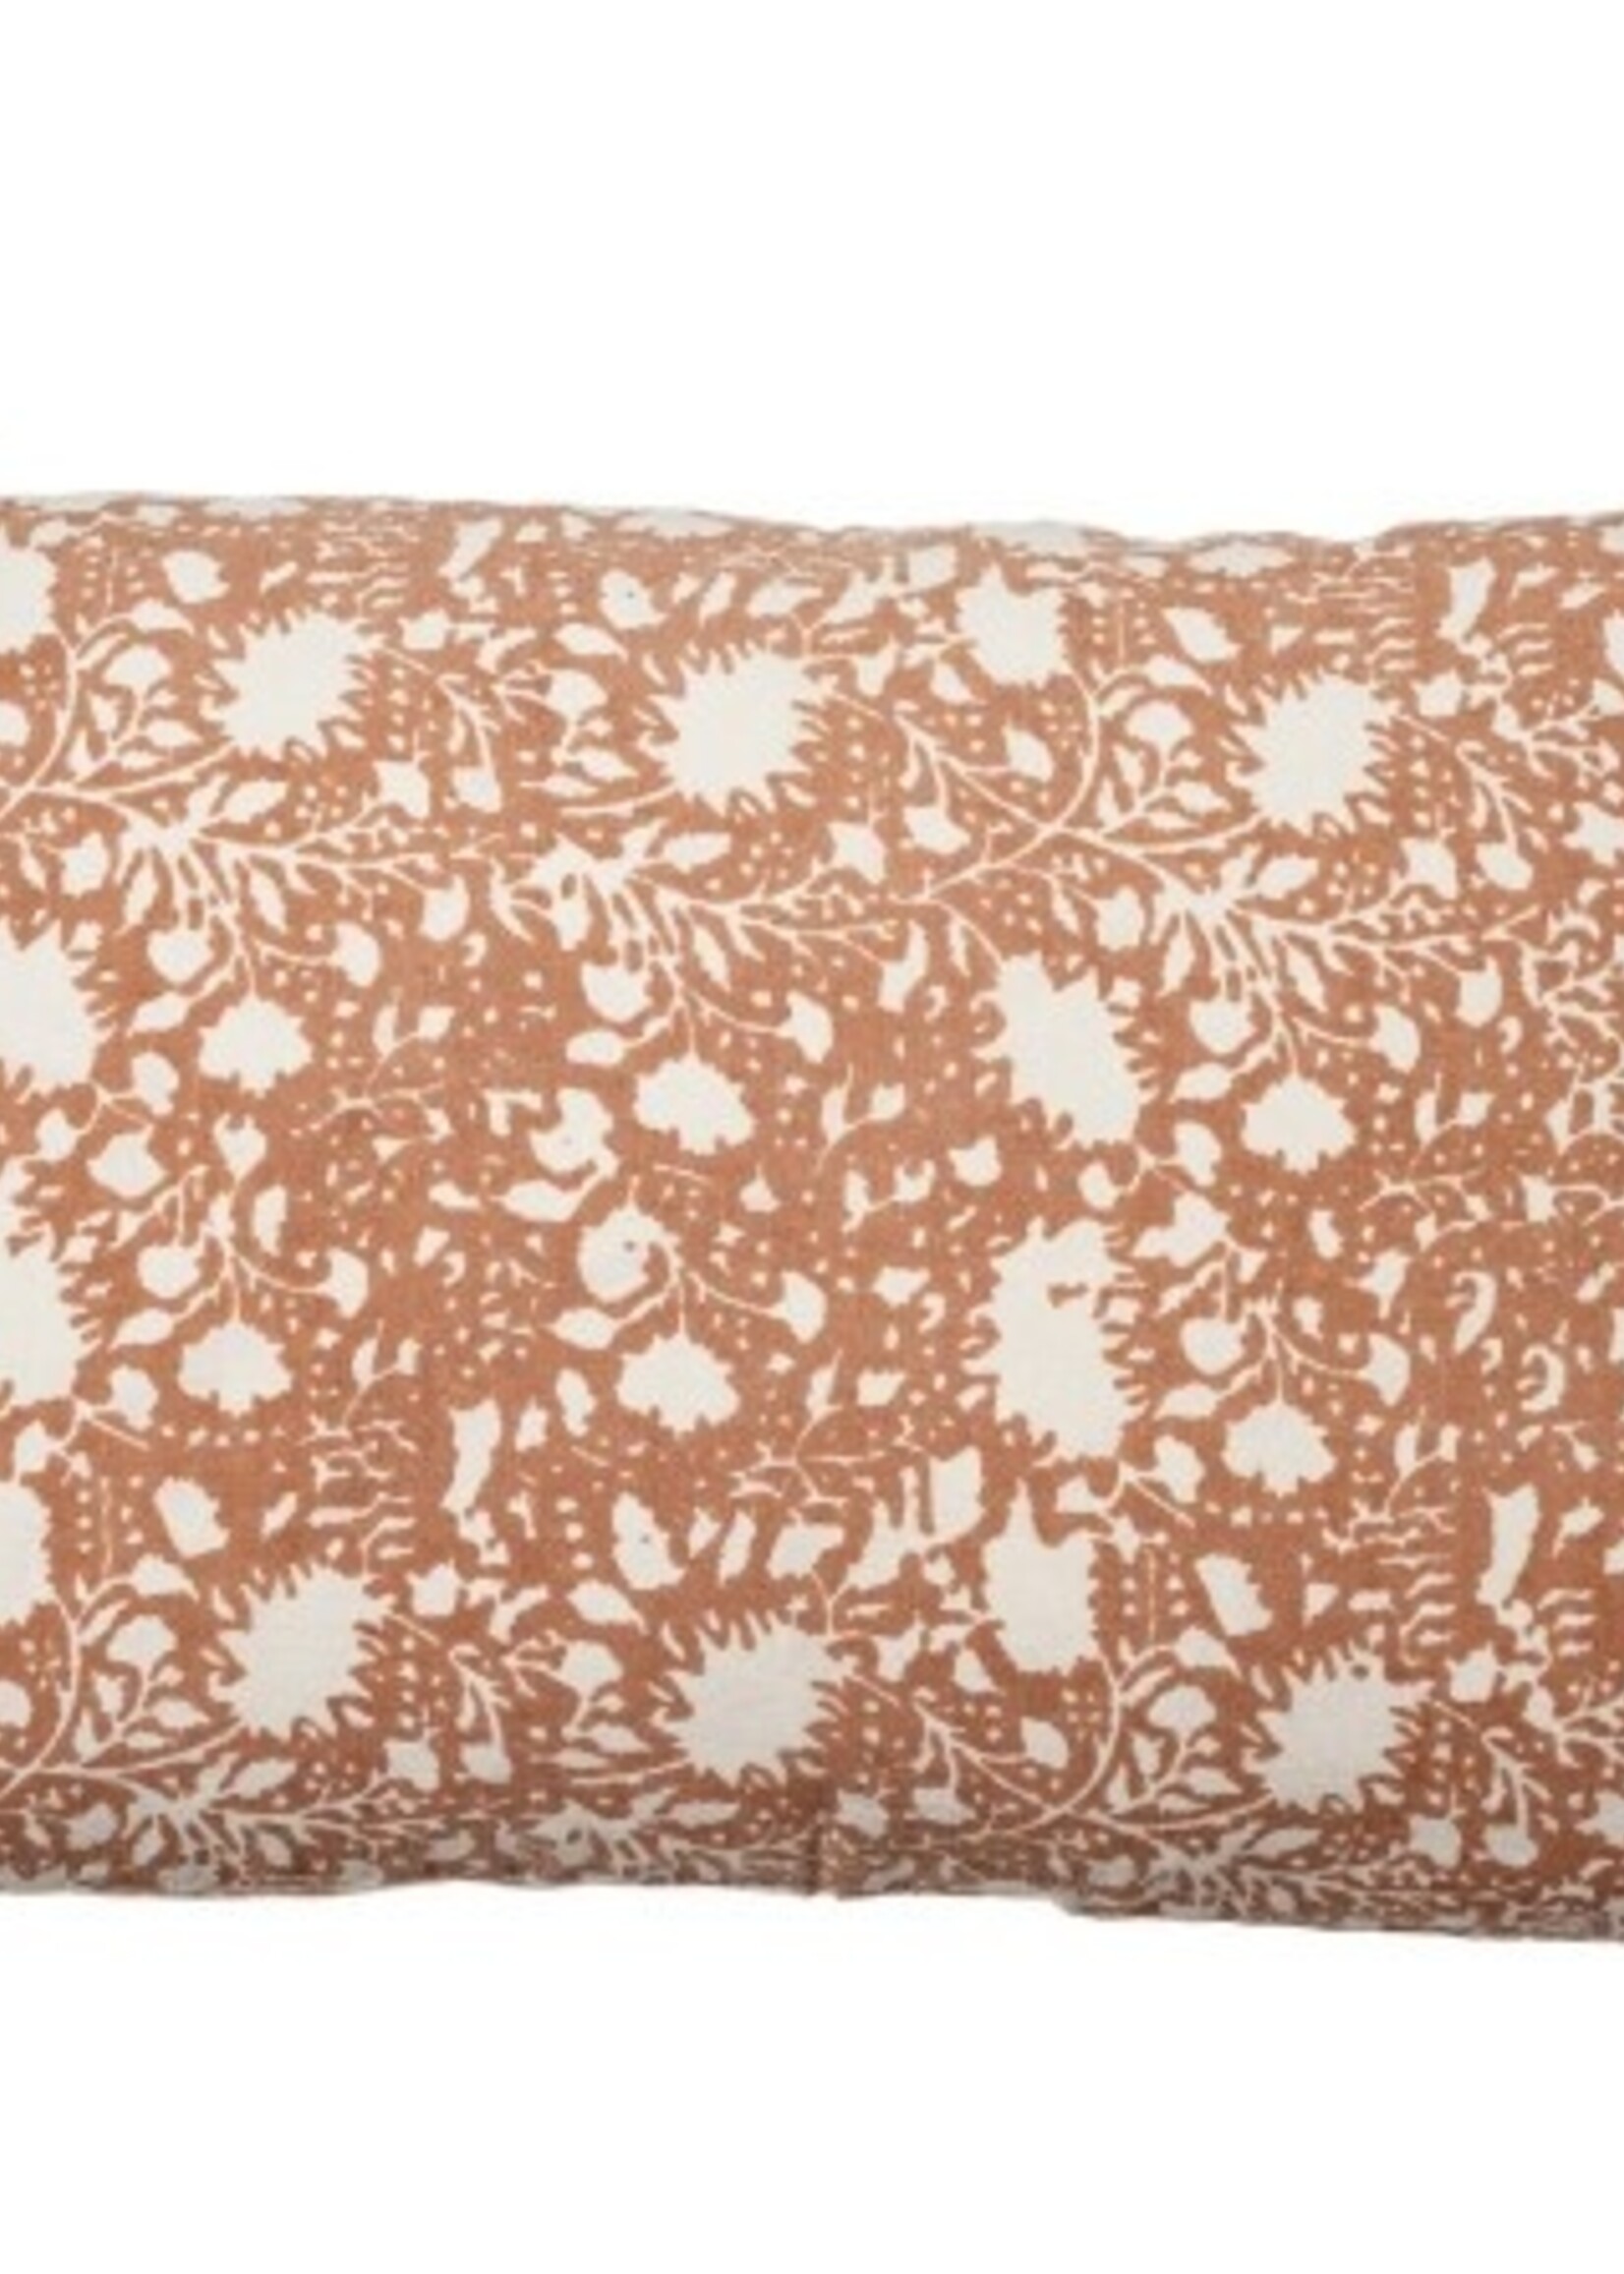 Indaba Eden Linen Toss Pillow * 16"x24" * Terracotta